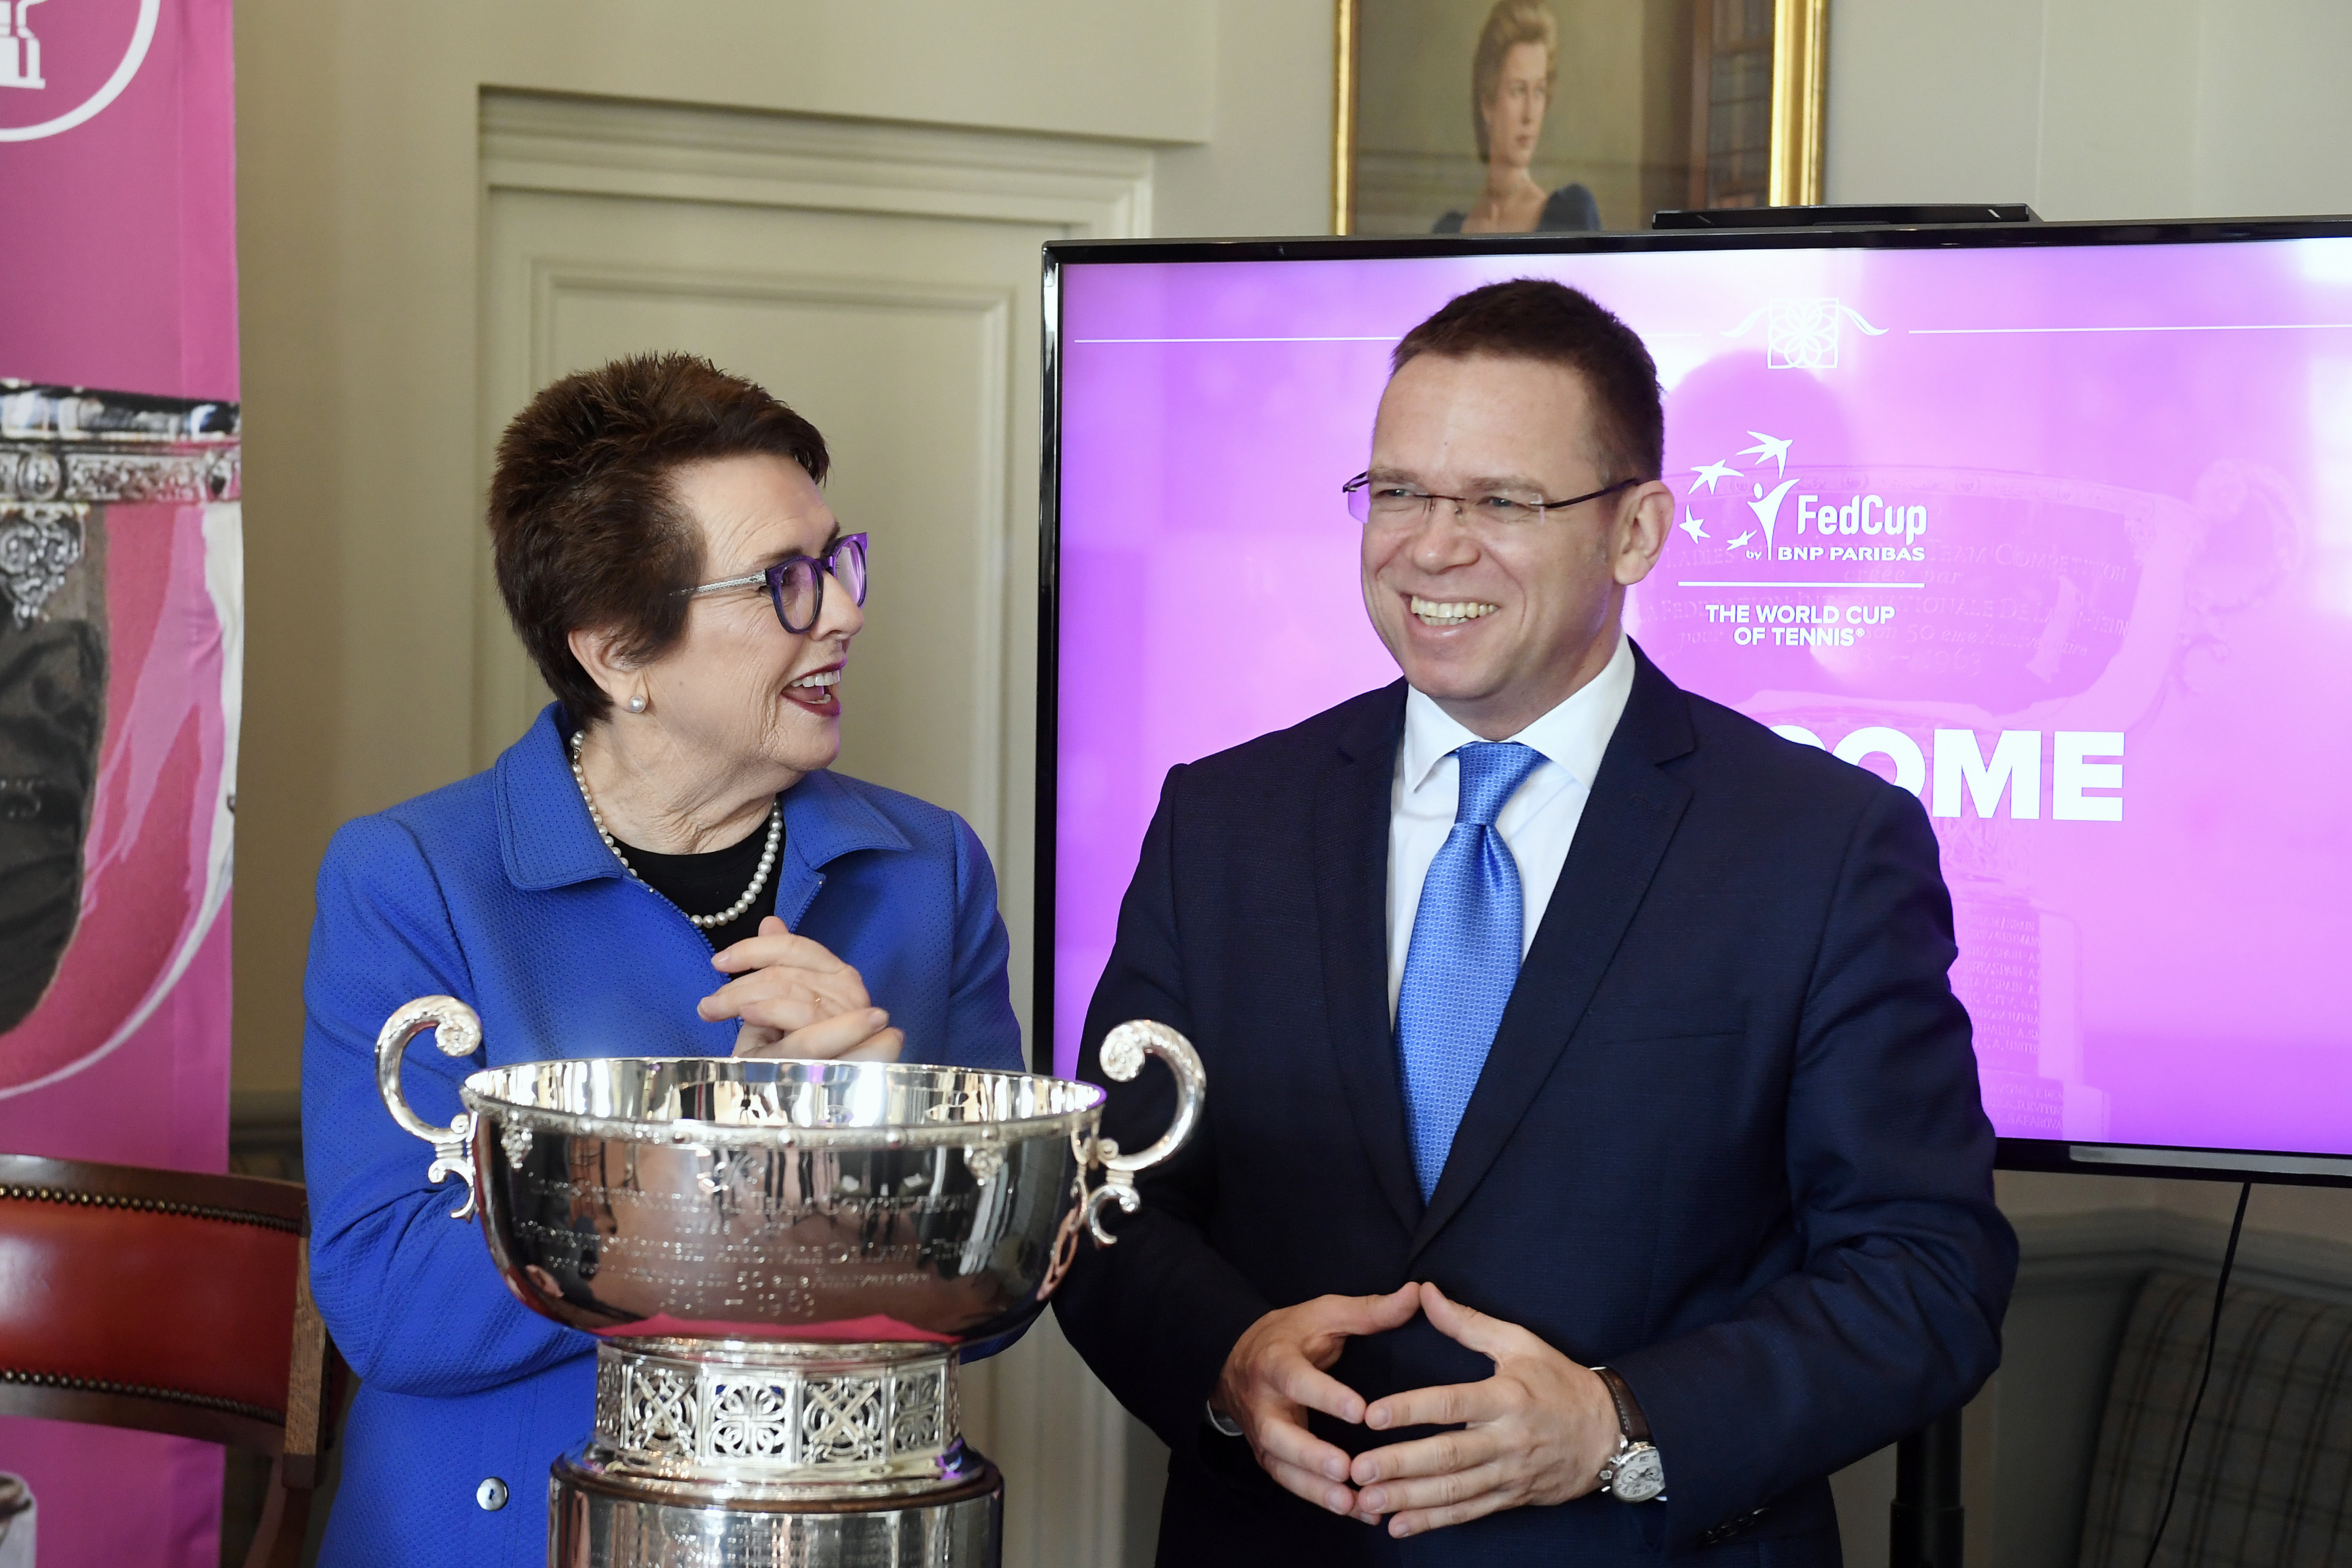 Budapešť byla vybrána jako hostitel finále ženského tenisového Fed Cupu v letech 2020, 2021 a 2022